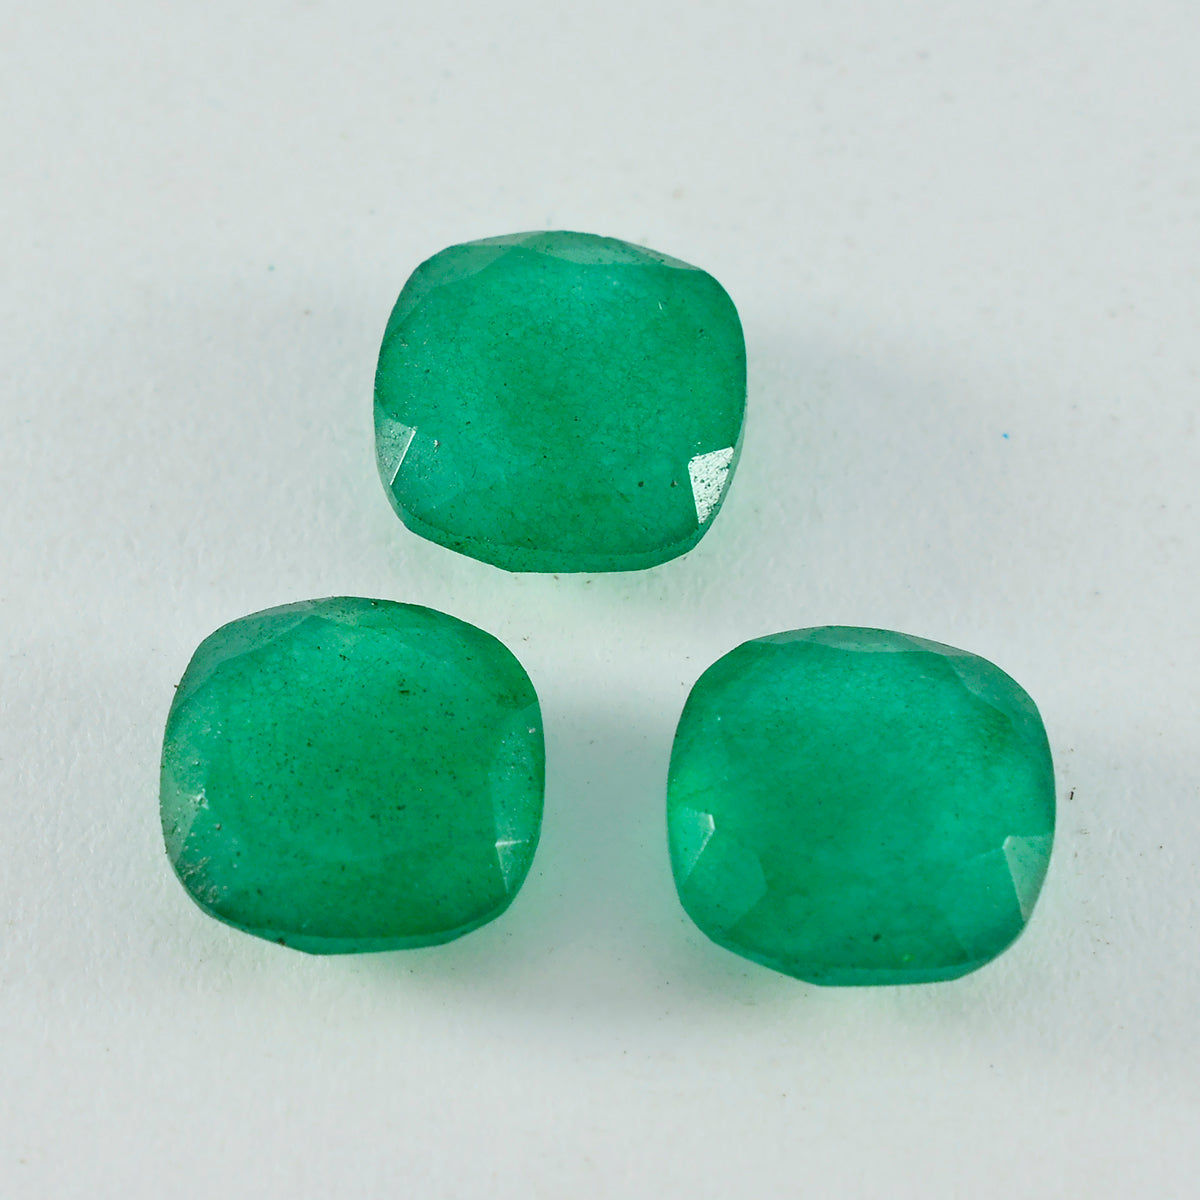 Riyogems 1 pièce véritable jaspe vert à facettes 13x13mm forme de coussin excellente qualité pierre en vrac